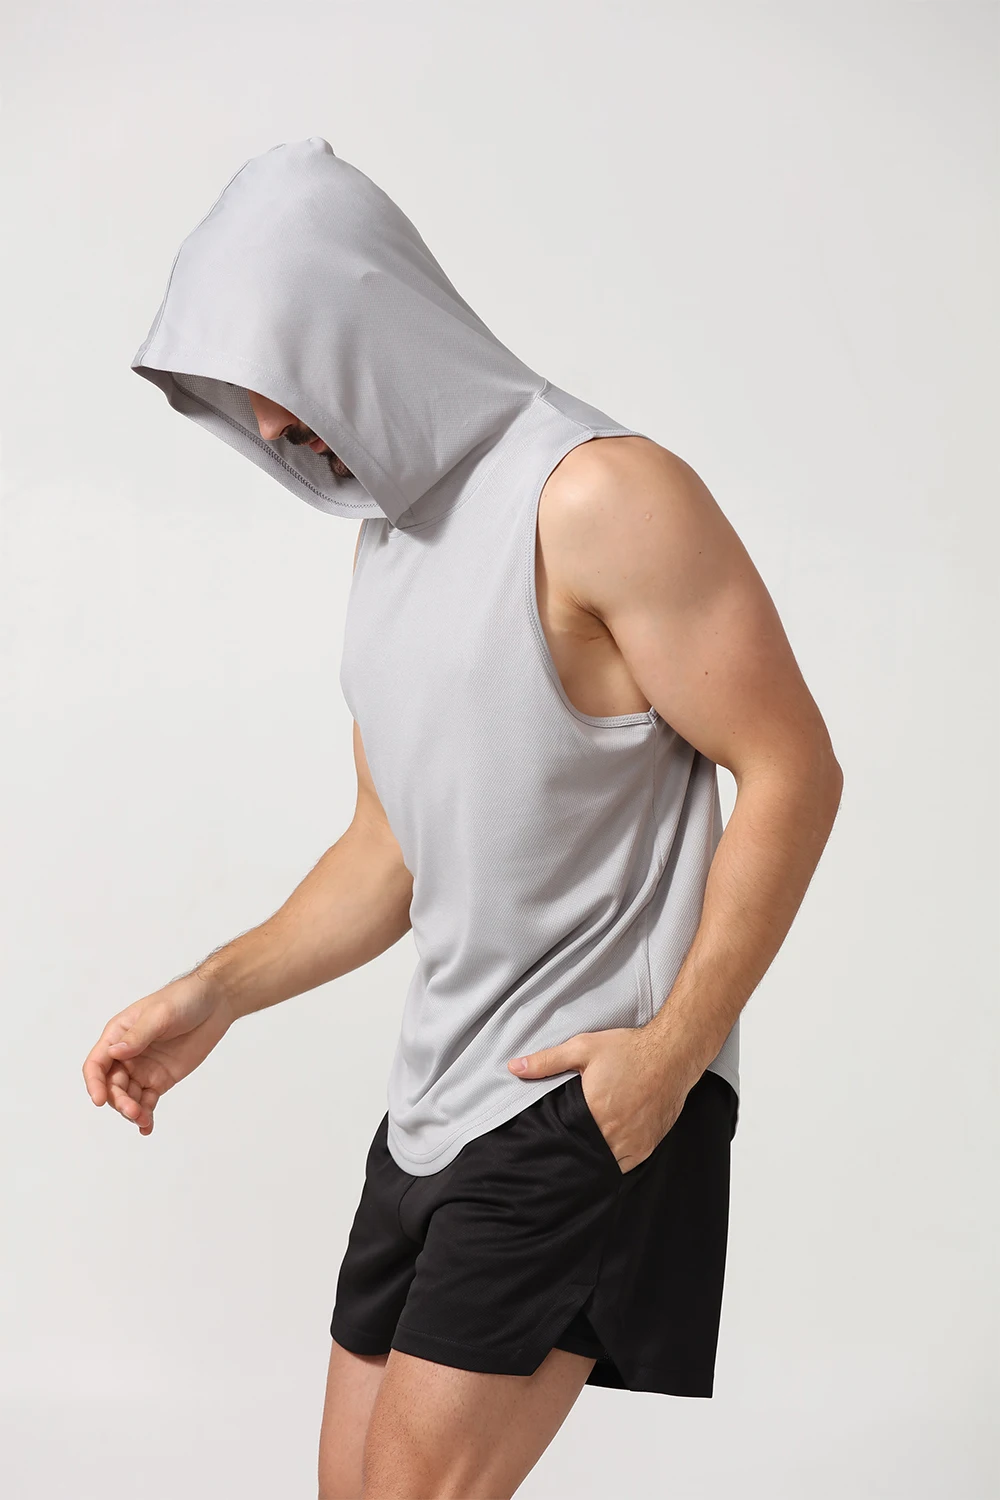 Men's Streetwear Workout Hooded Tank Tops Sports Body Building Stringer ...